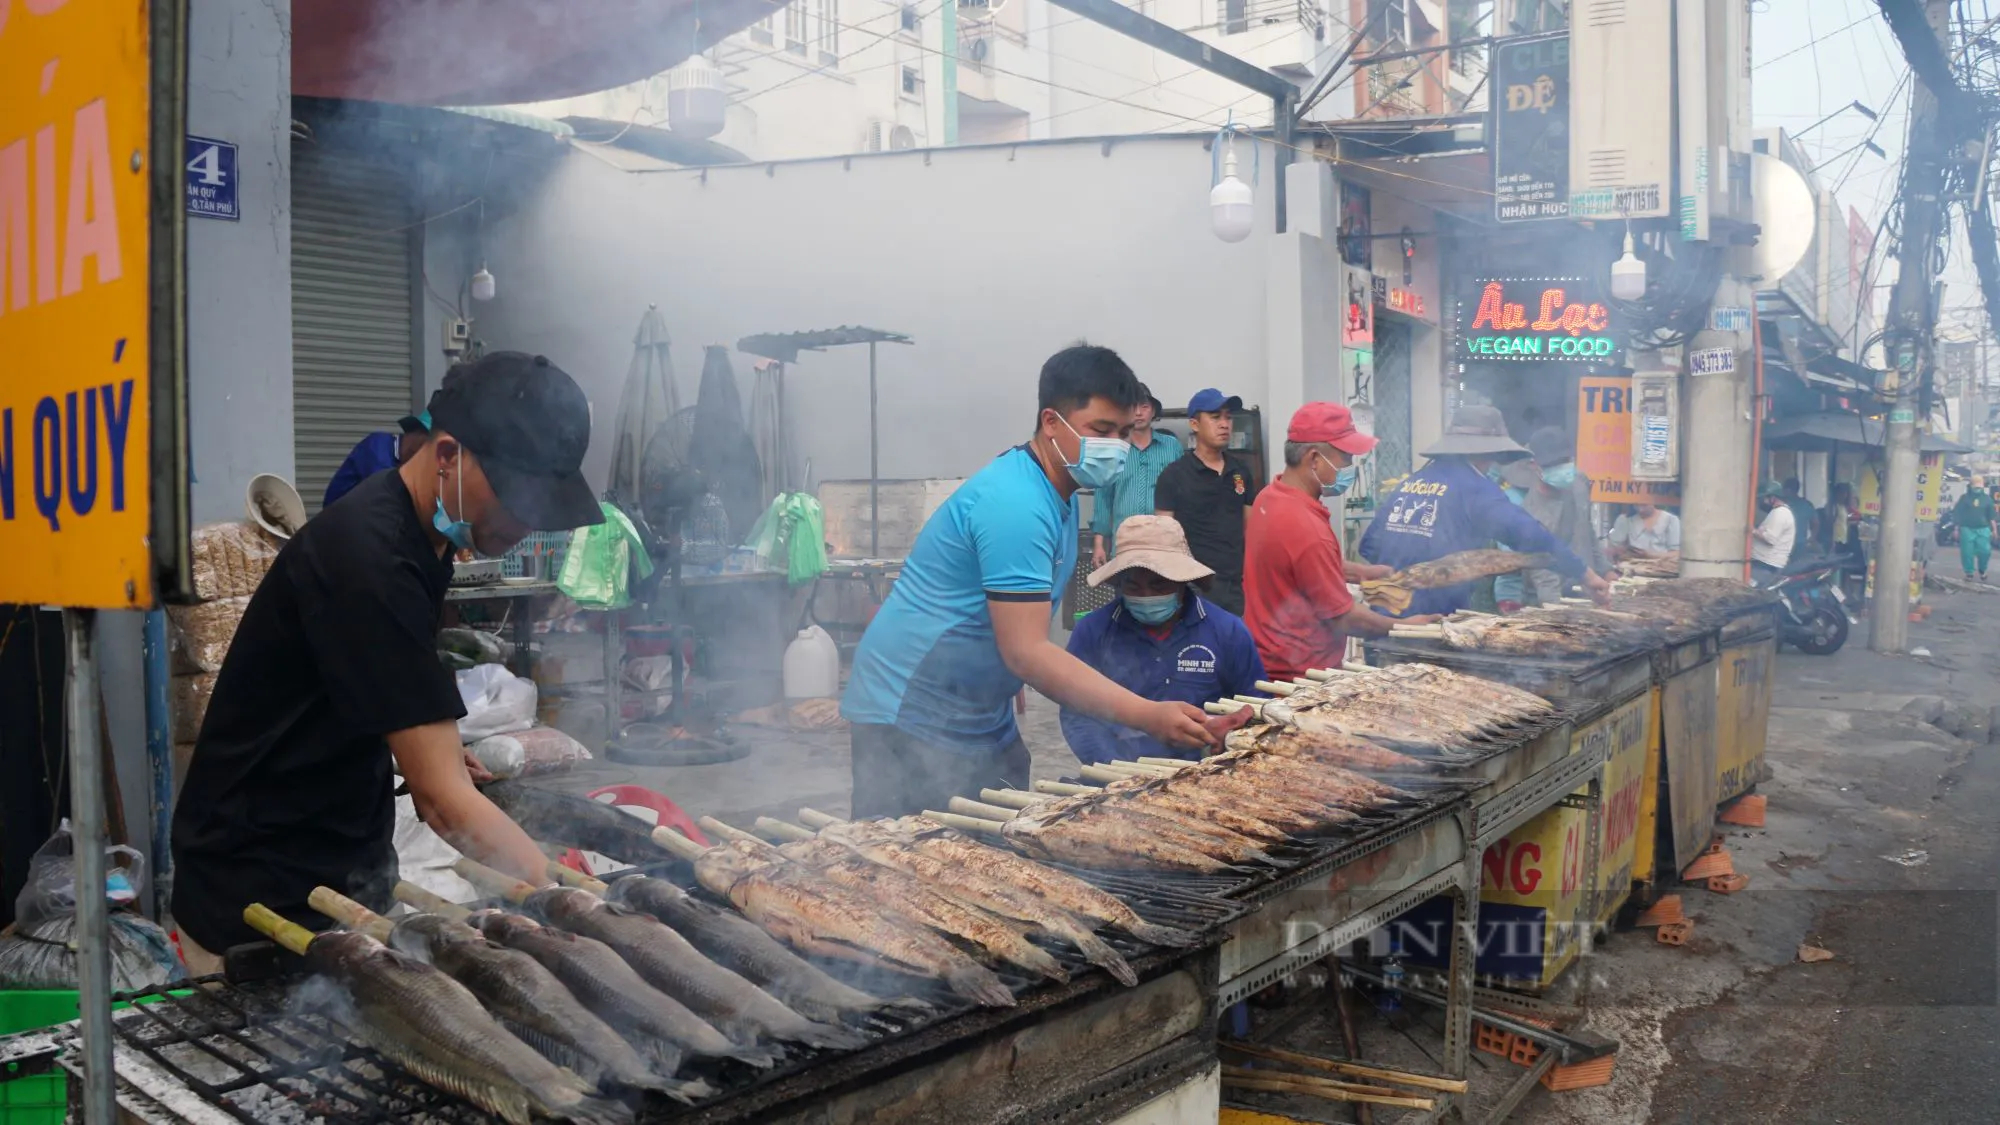 Sáng đêm nướng cá lóc bán ngày vía Thần Tài ở TP.HCM, có tiệm huy động 40 người nướng hàng tấn cá- Ảnh 1.